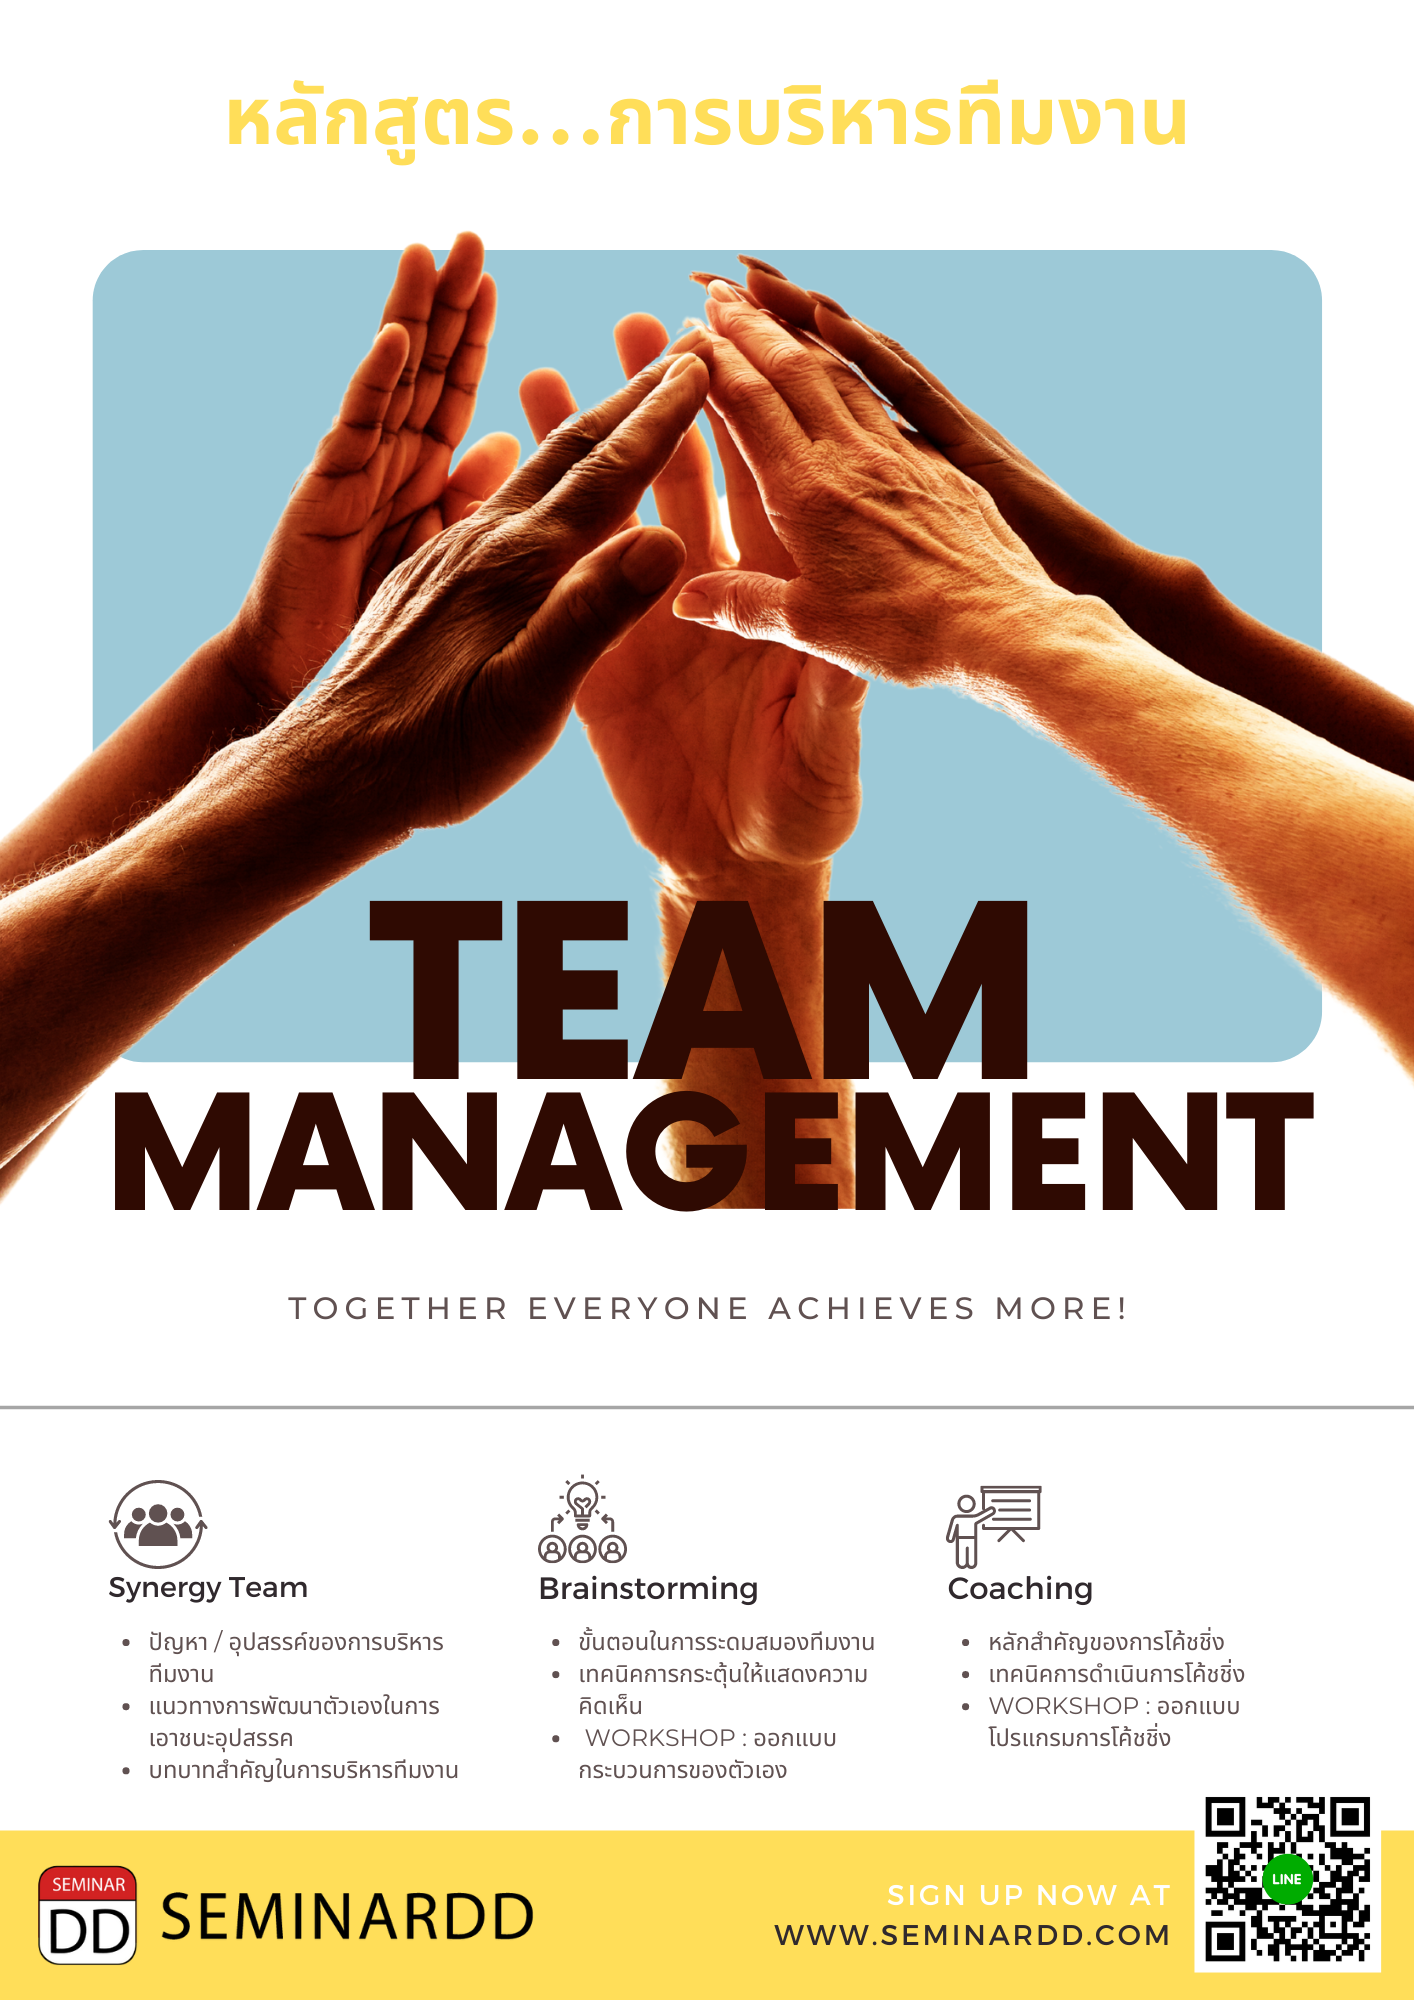 หลักสูตร : การบริหารทีมงาน (Team Management)